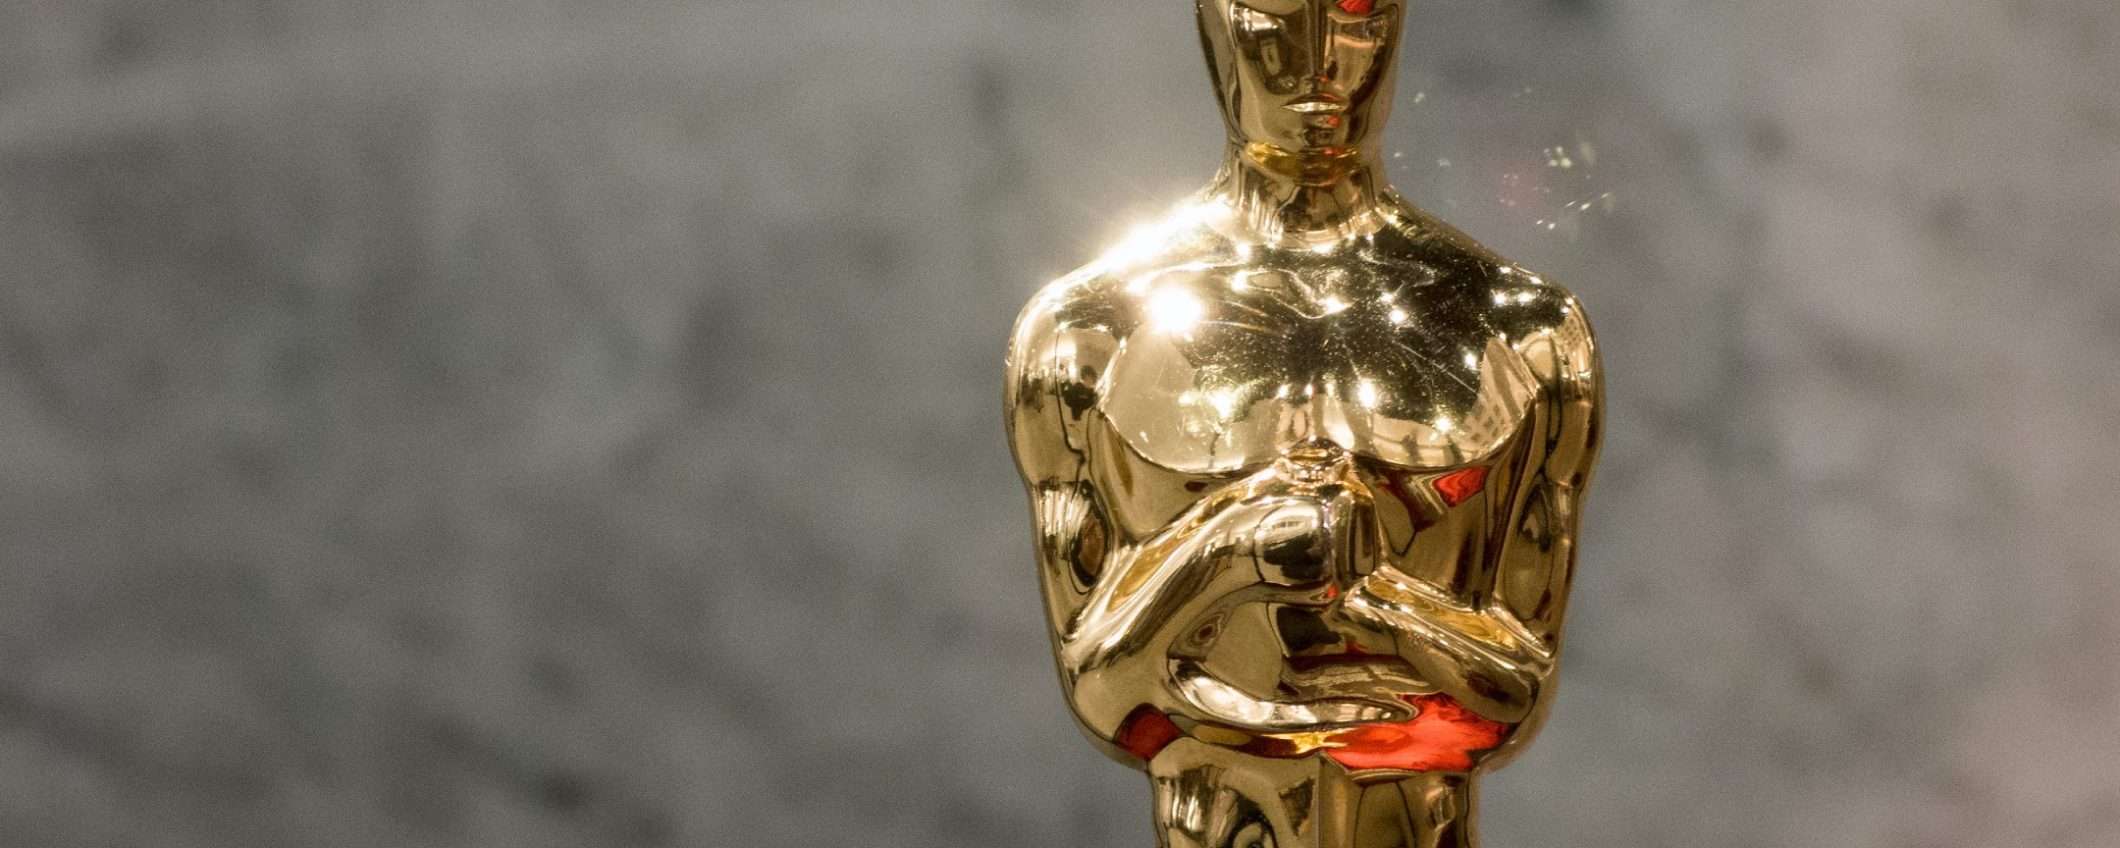 Notte degli Oscar 2023, allarme scam: come evitare le truffe online